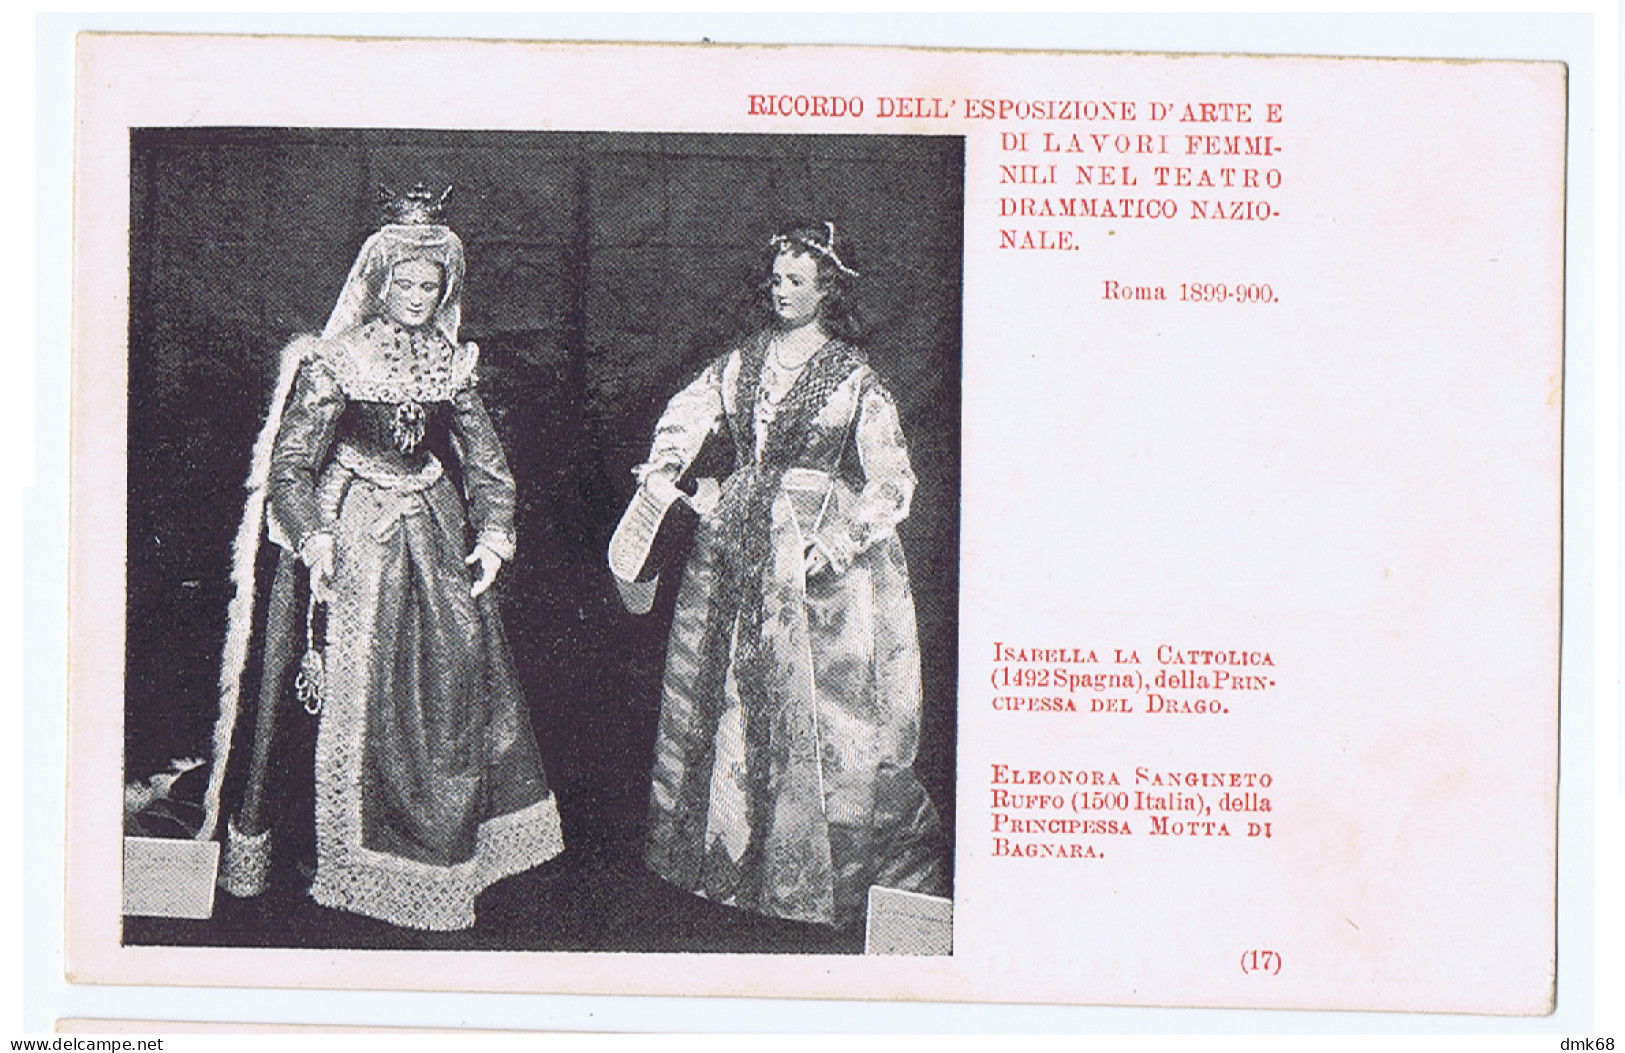 ROMA - RICORDO ESPOSIZIONE DI LAVORI FEMMINILI 1899/900 - ELEONORA DANGINETTO DELLA PRINCIPESSA MOTTA DI BAGNARA (15504) - Mostre, Esposizioni